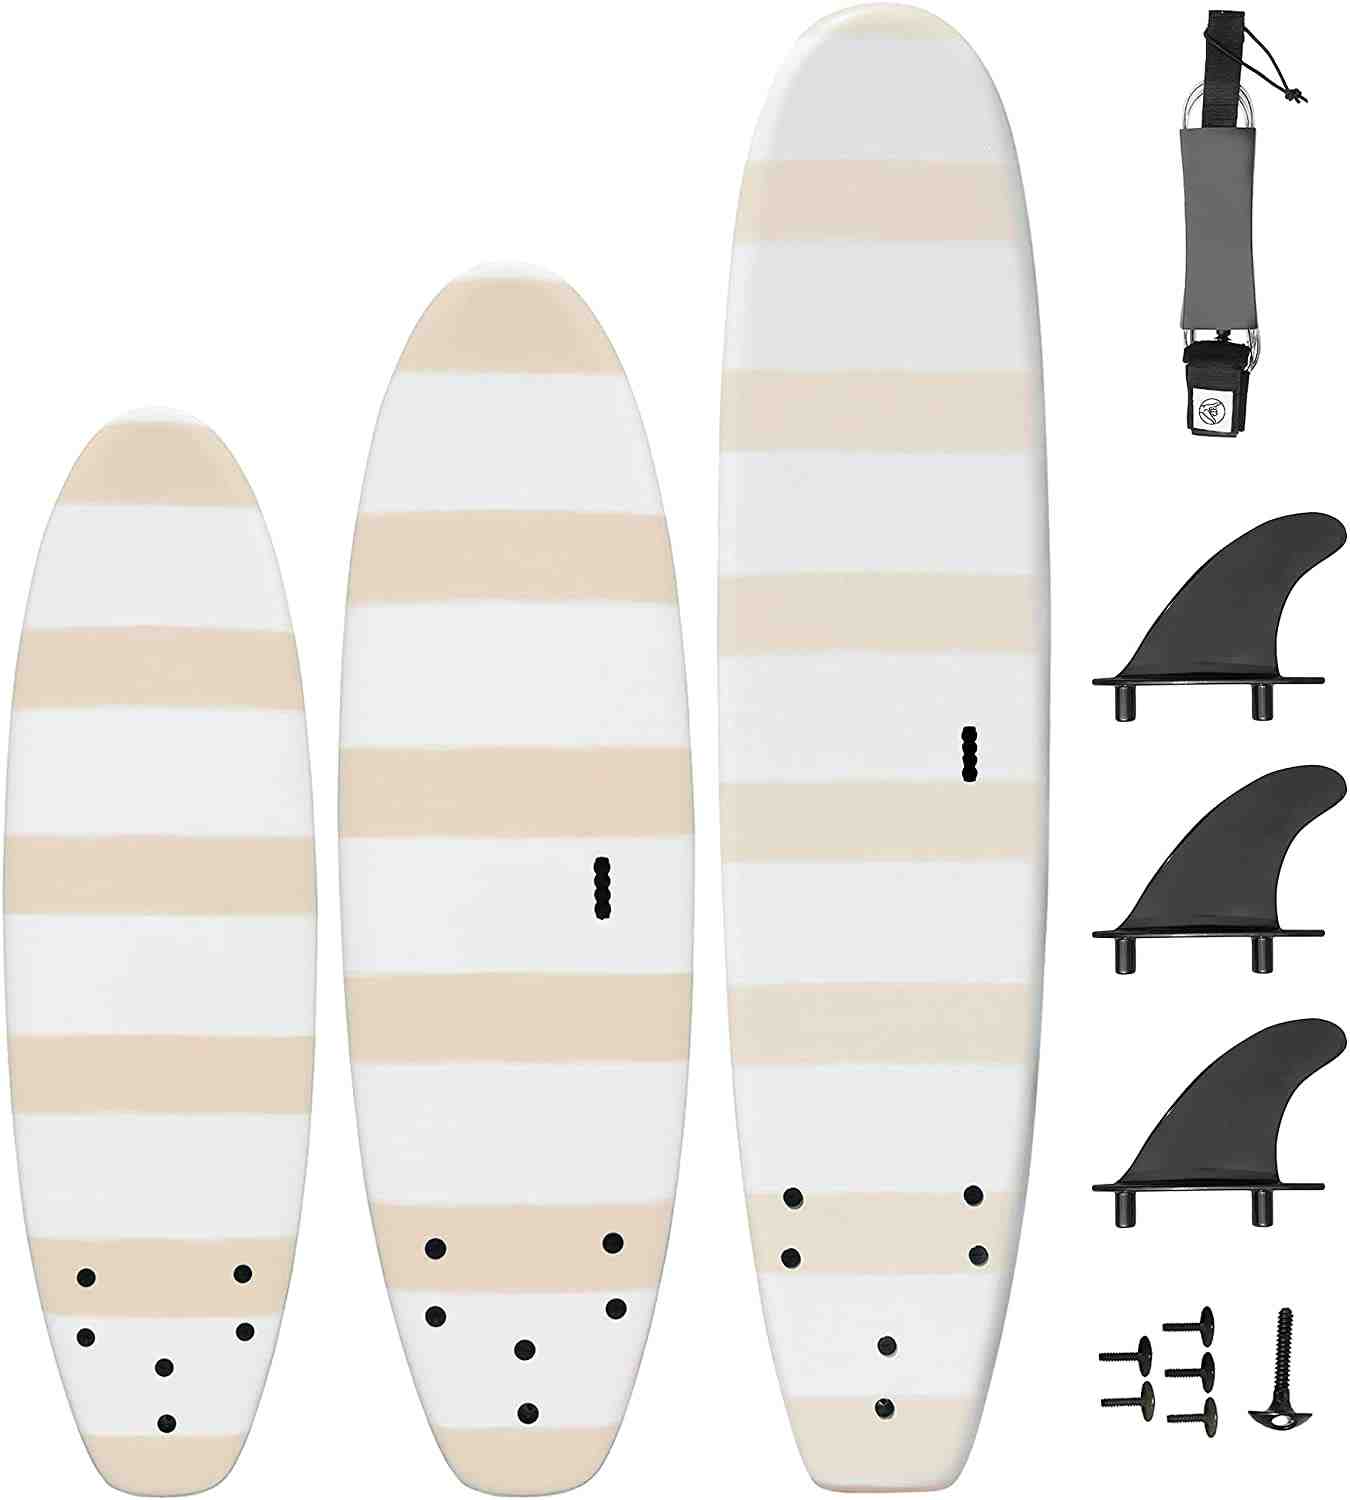 Comment mesurer une planche de surf ?